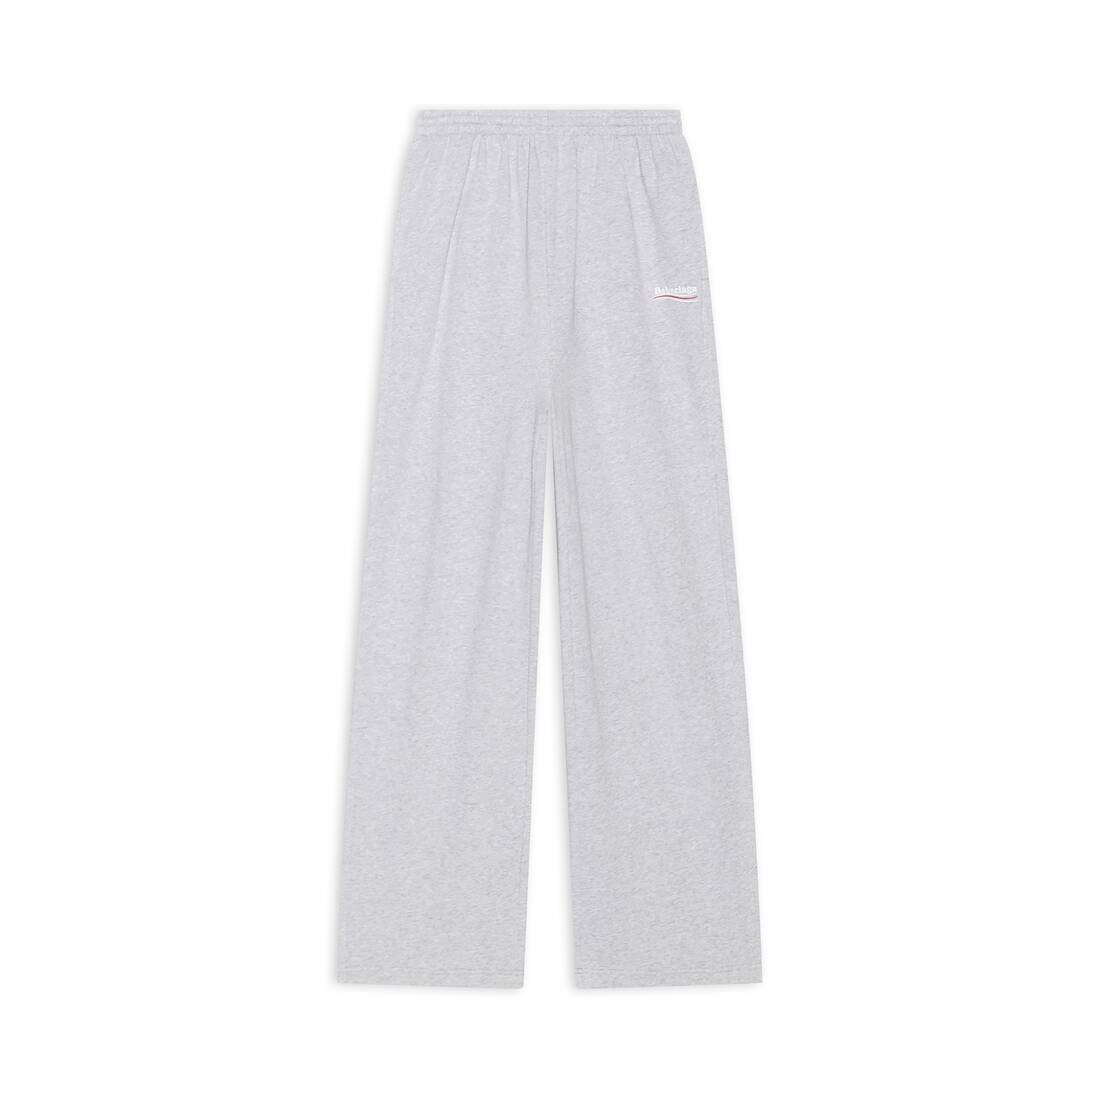 baggy grey sweatpants outfit men｜TikTok Search